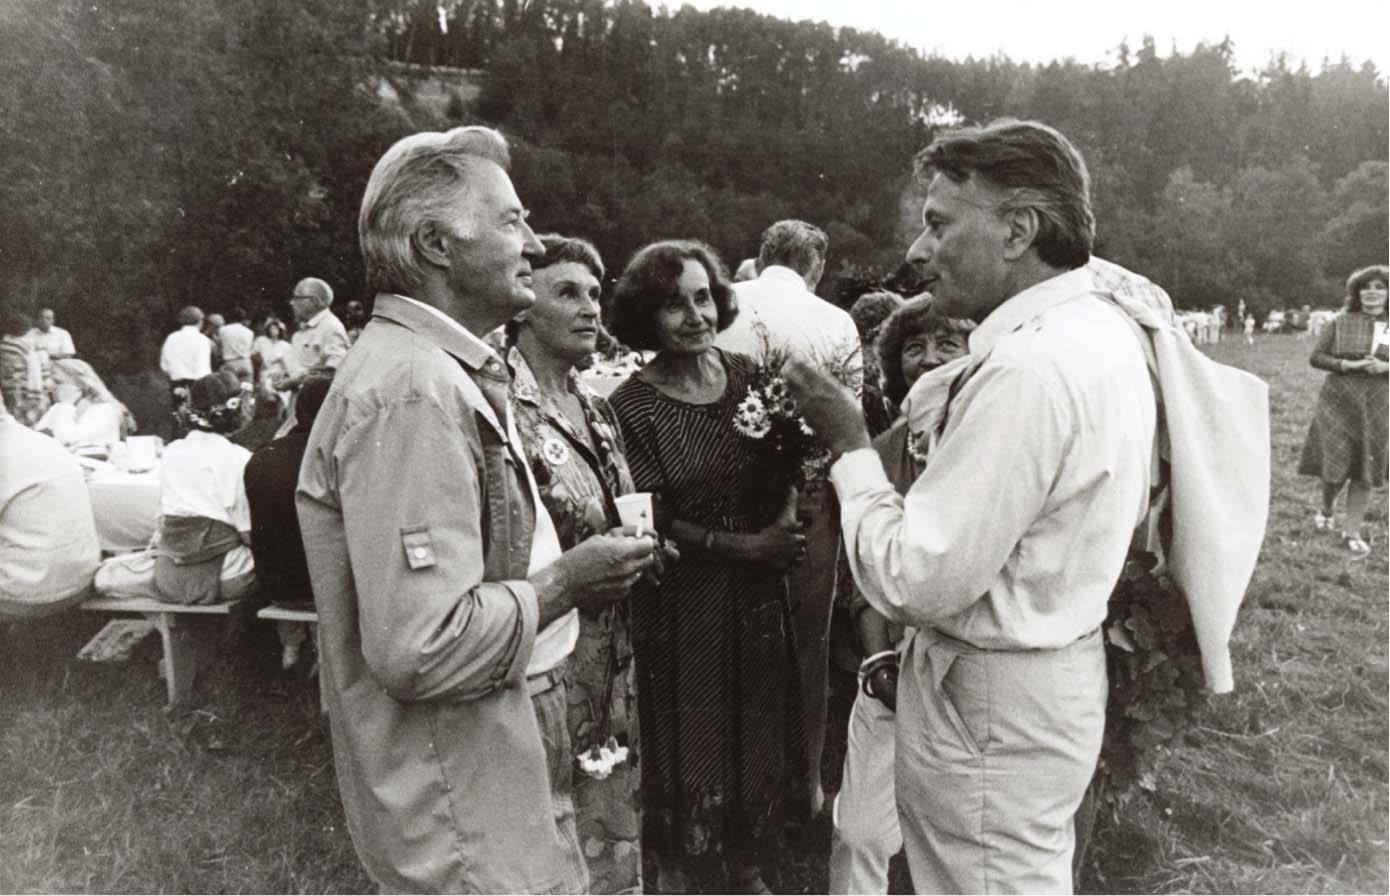 1. Pasaules latviešu ārstu kongresā 1989. gadā, svinot Jāņus pie Zvārtas ieža – Harijs Liepiņš, Ilmārs Lazovskis, Mudīte Šneidere, Edīte Lazovska